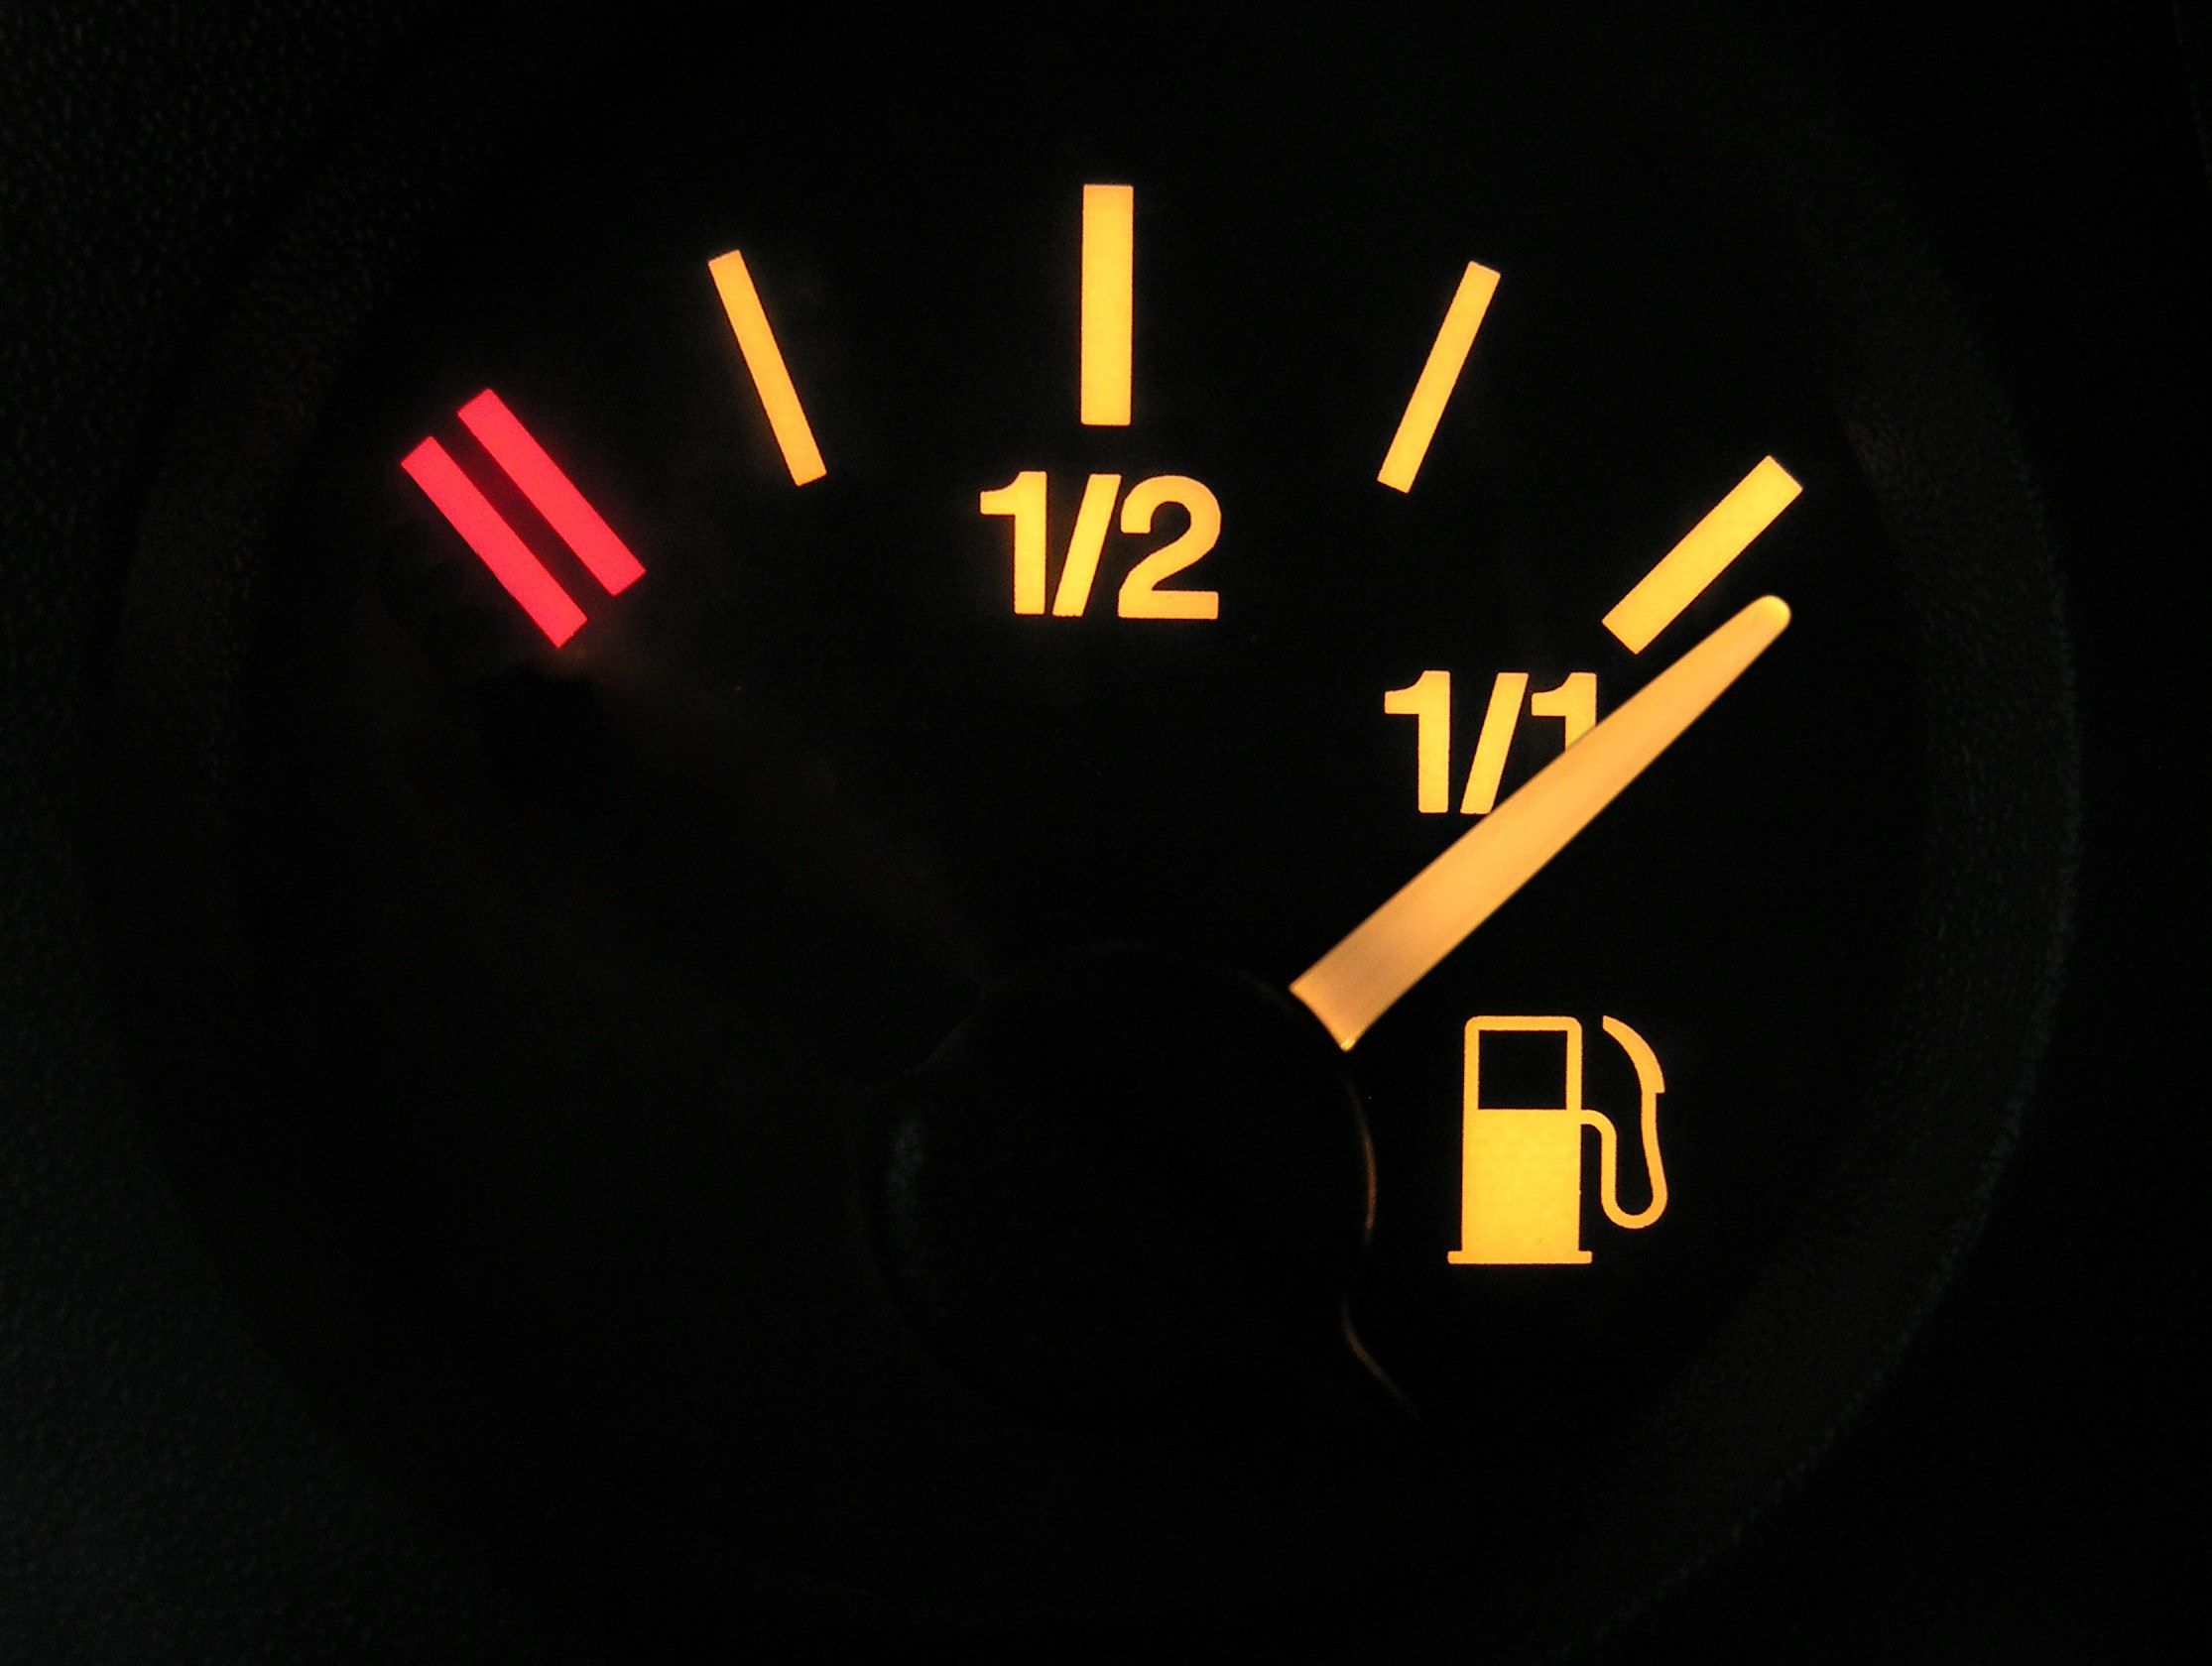 Fuel gauge indicates tank is full - fuel senders